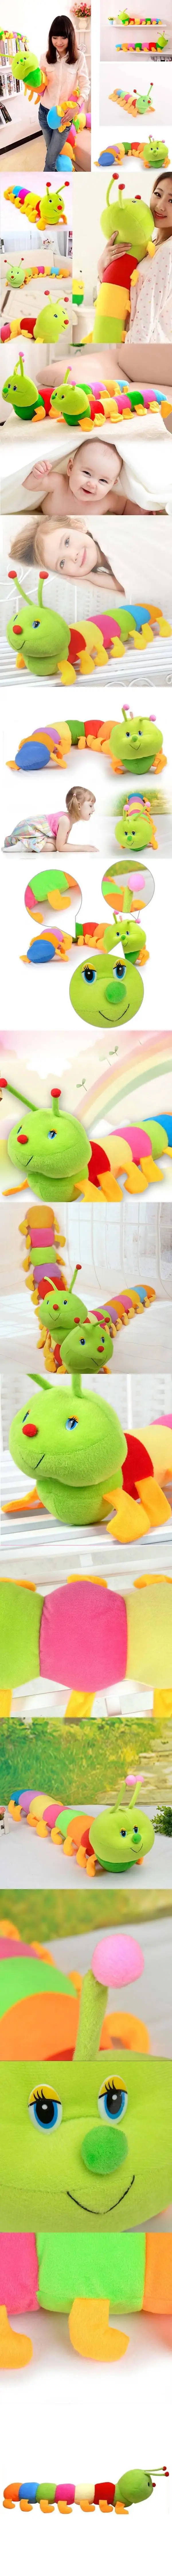 Vitoki 50 см модные, Красочные Мягкий Подушка прекрасные Развивающие мягкие игрушки-подушки куклы игрушки для детей детские плюшевые игрушки